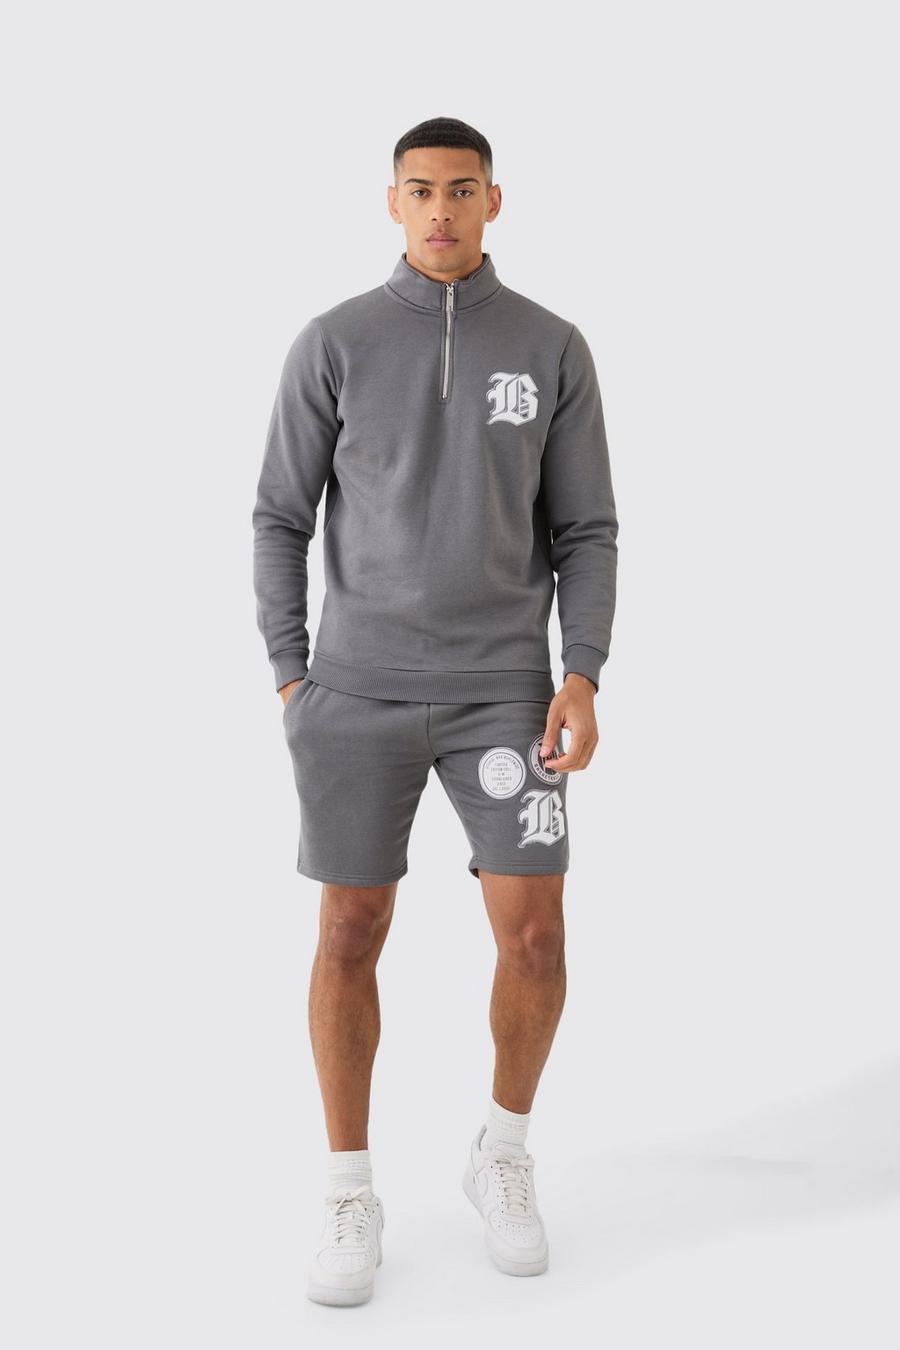 Charcoal B Träningsoverall med shorts och hög krage